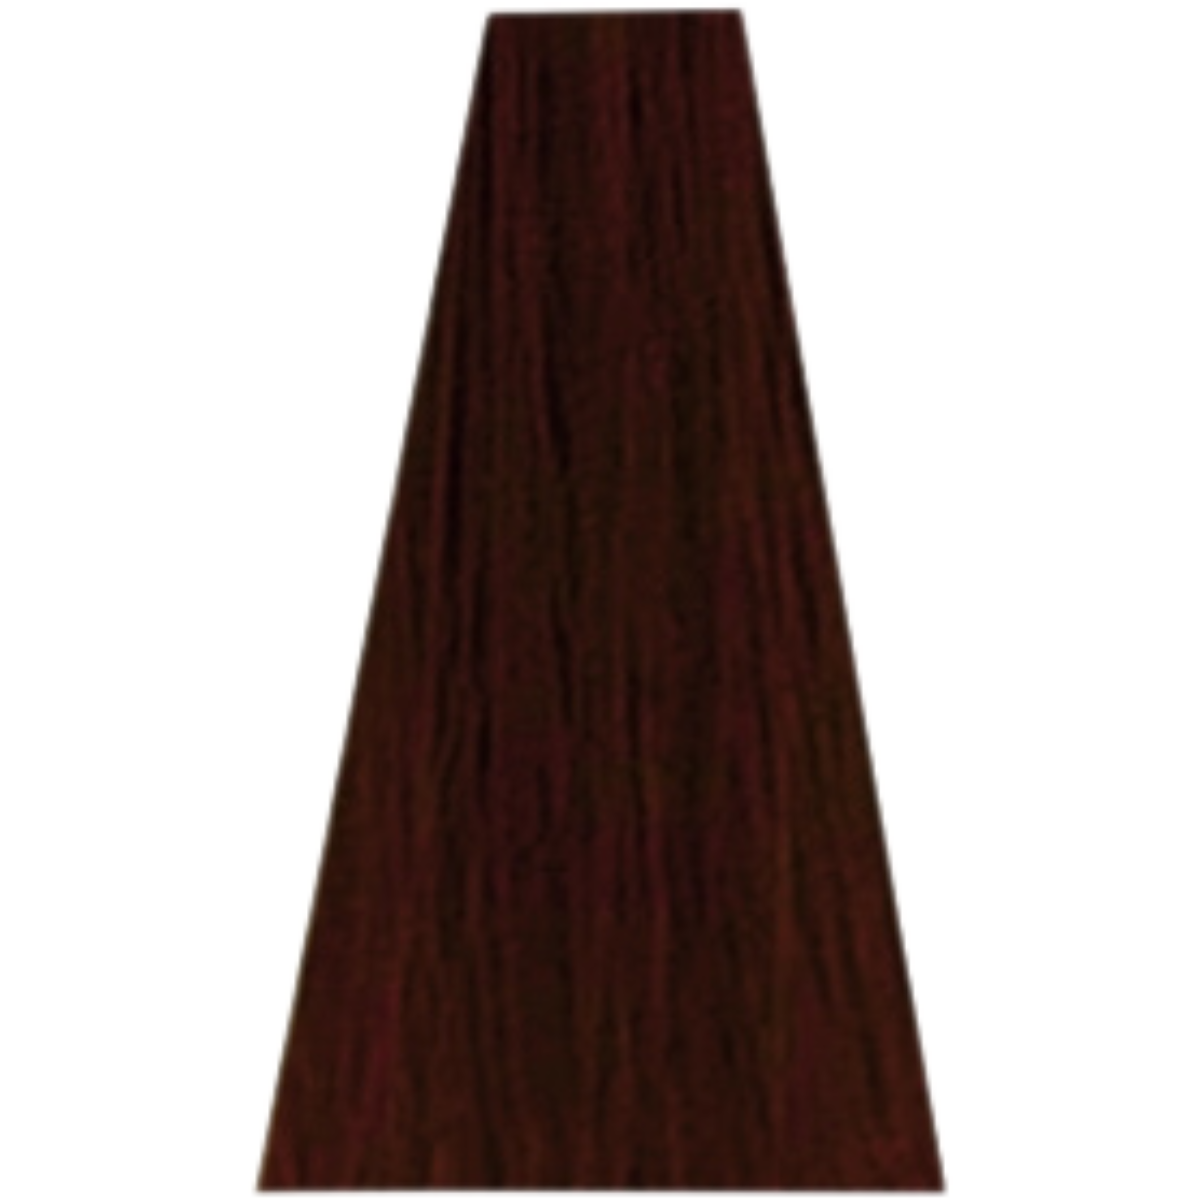 צבע שיער 4.62 RED / COPPER / BURGUNDY דיה רישס לוריאל DIA RICHESSE LOREAL צבע שטיפה לשיער